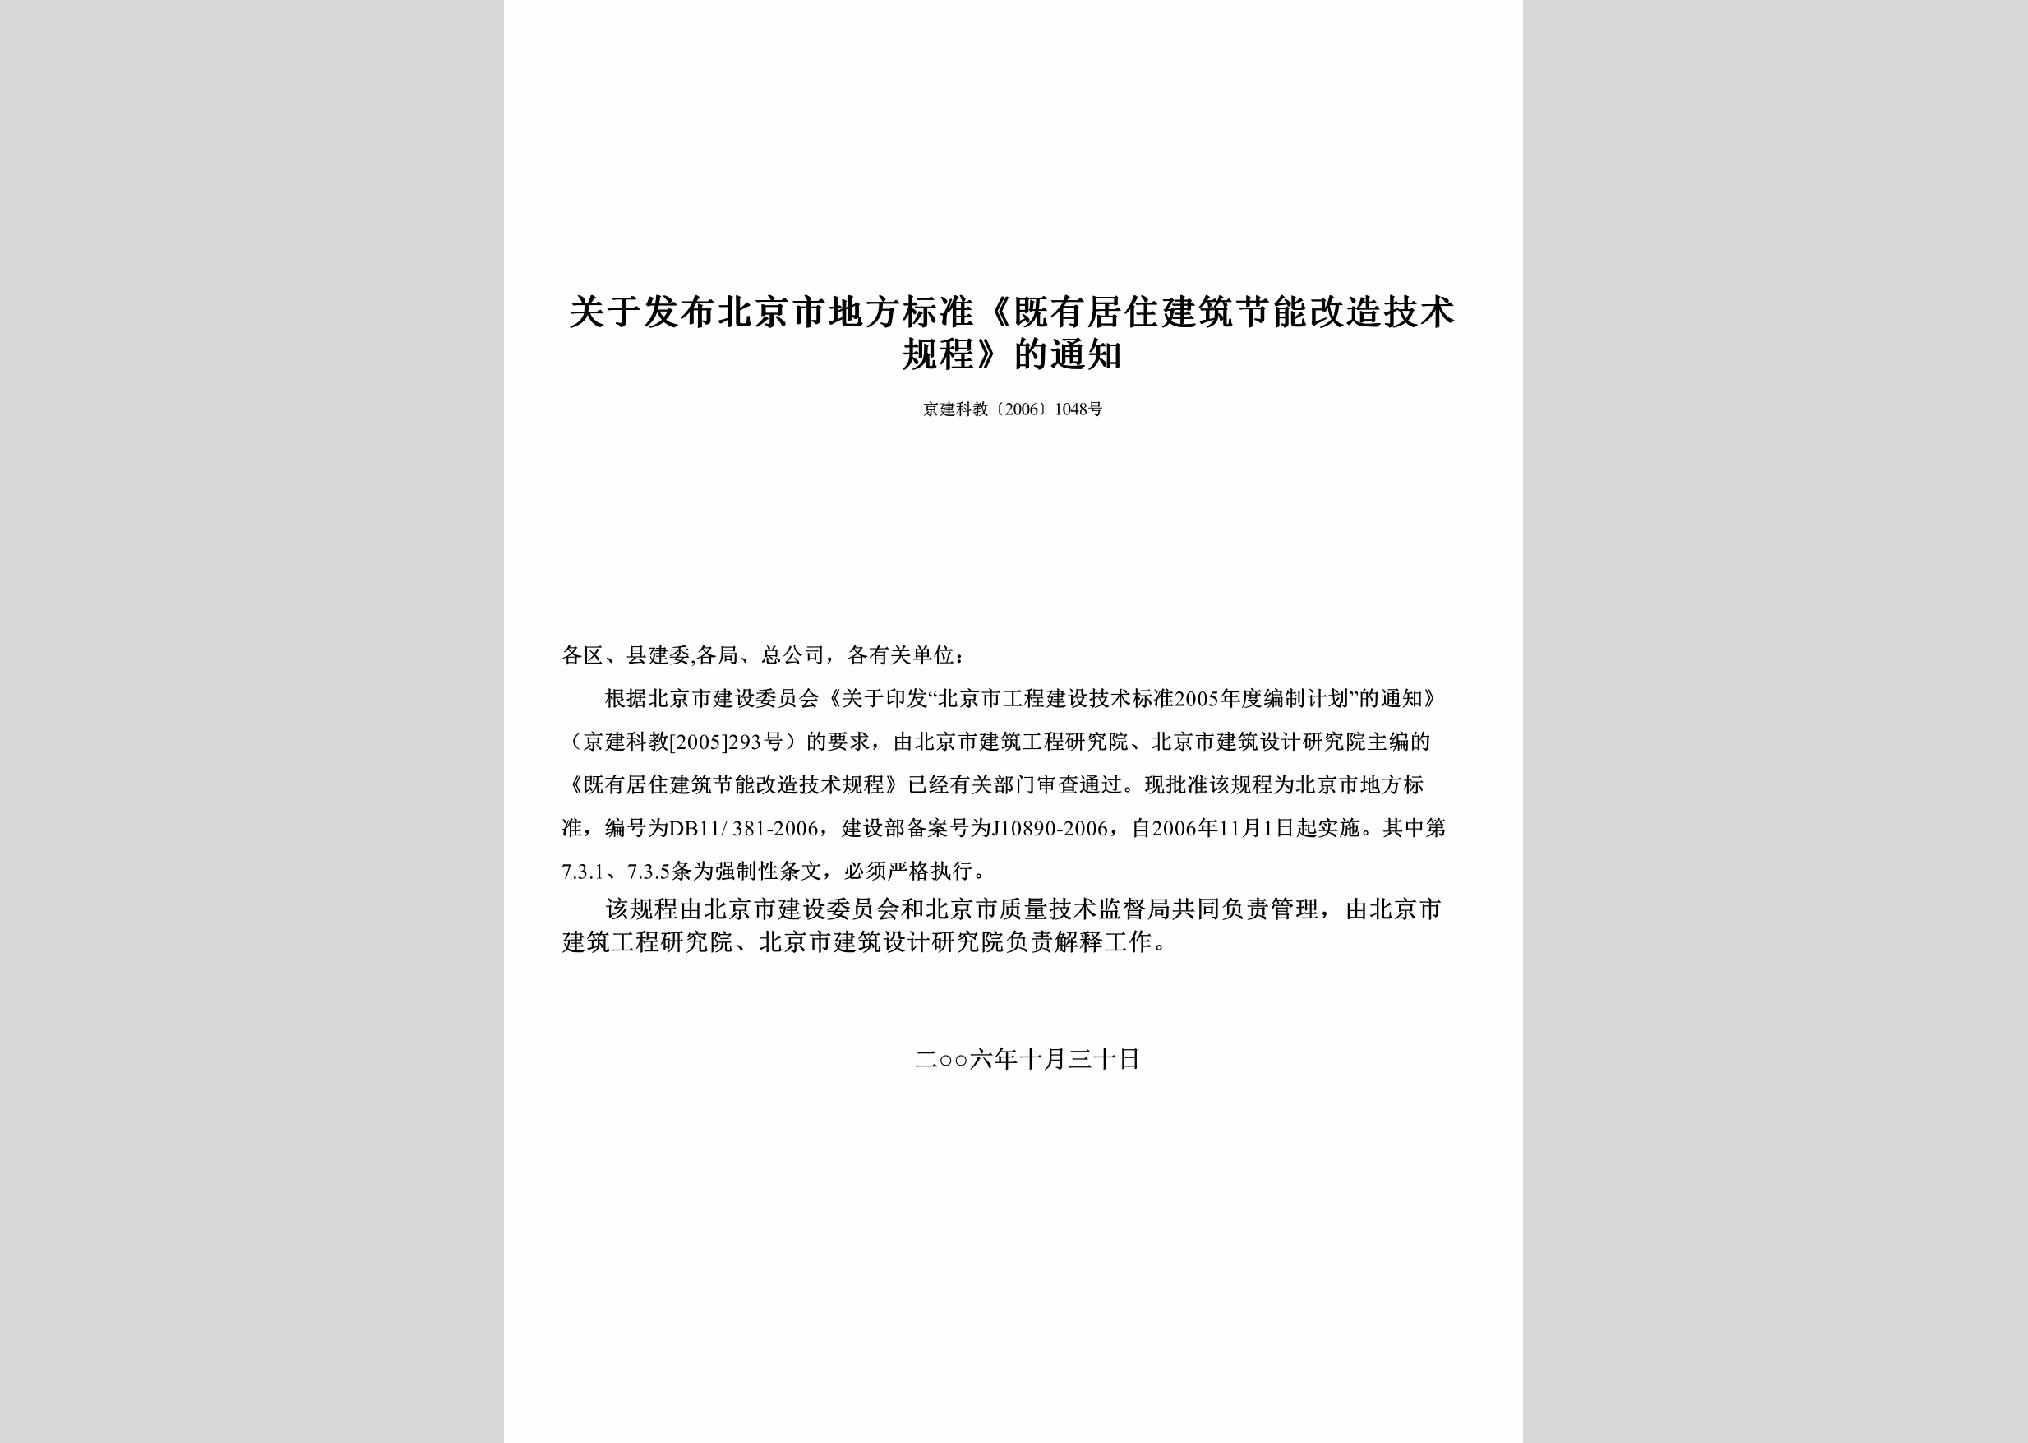 京建科教[2006]1048号：关于发布北京市地方标准《既有居住建筑节能改造技术规程》的通知